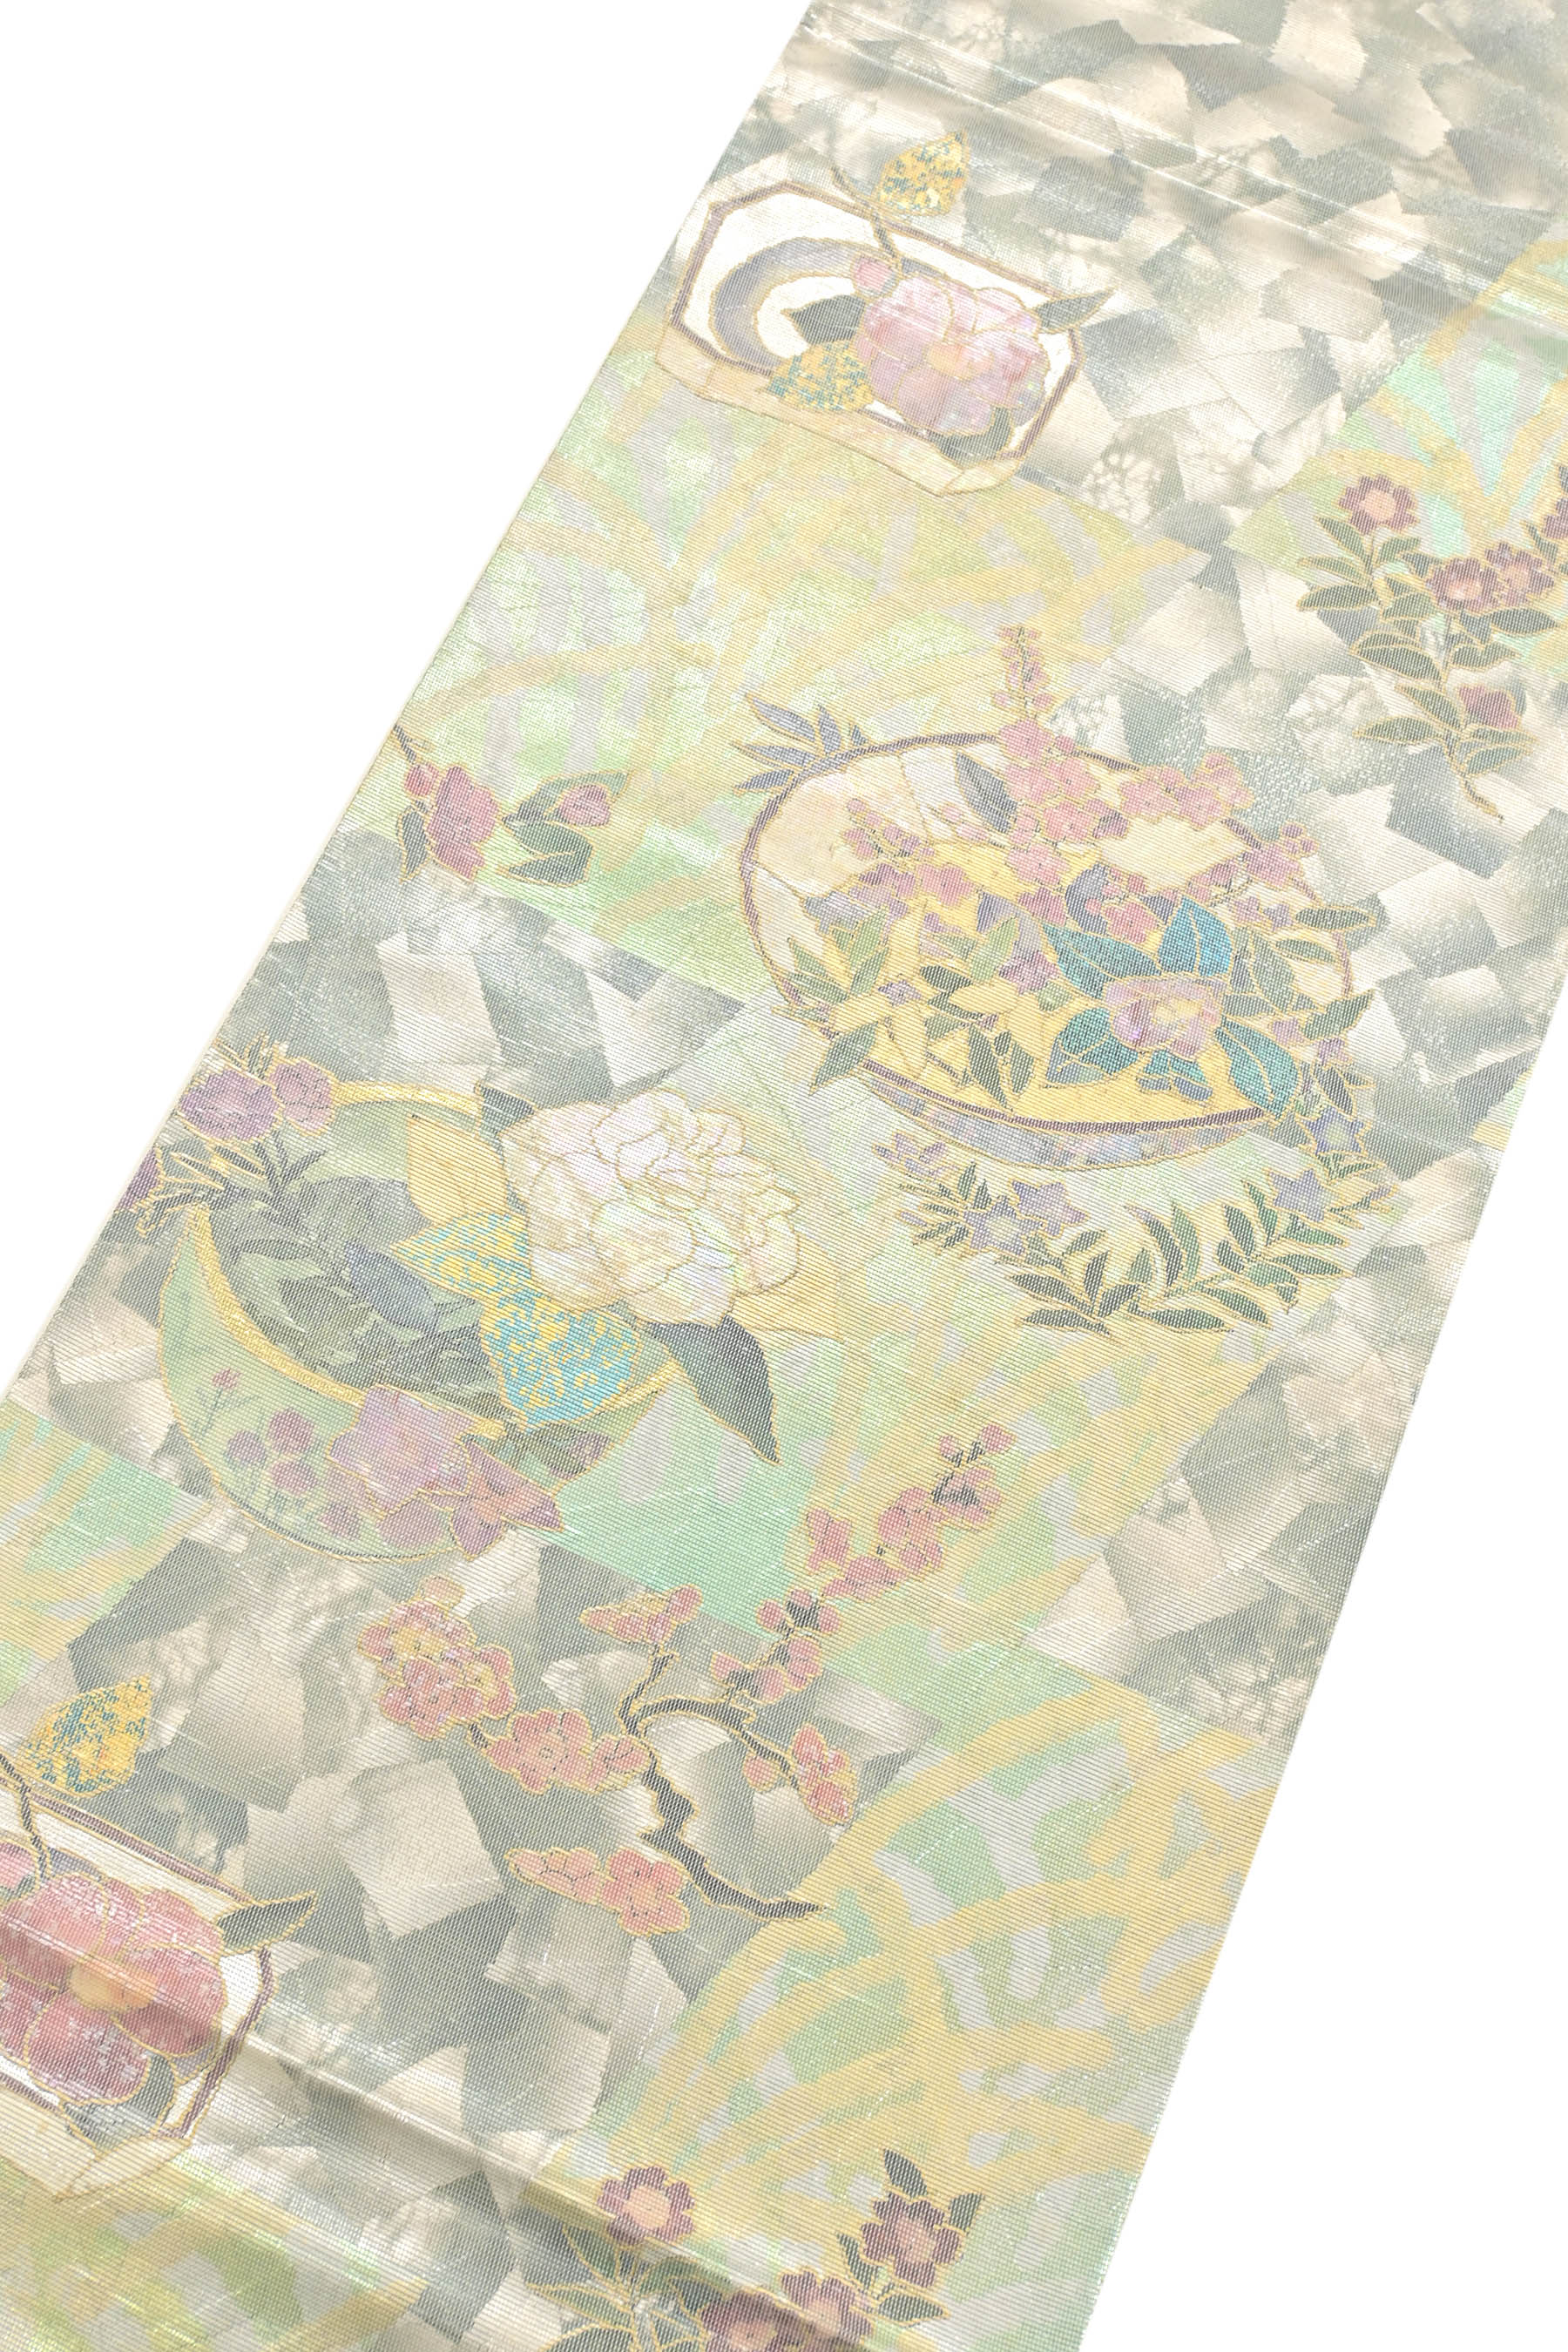 【となみ織物】 特選西陣織螺鈿箔袋帯 「四季花かご」 独特のムード、螺鈿の輝き… ドレッシーに装う一本！ 長期在庫処分価格！